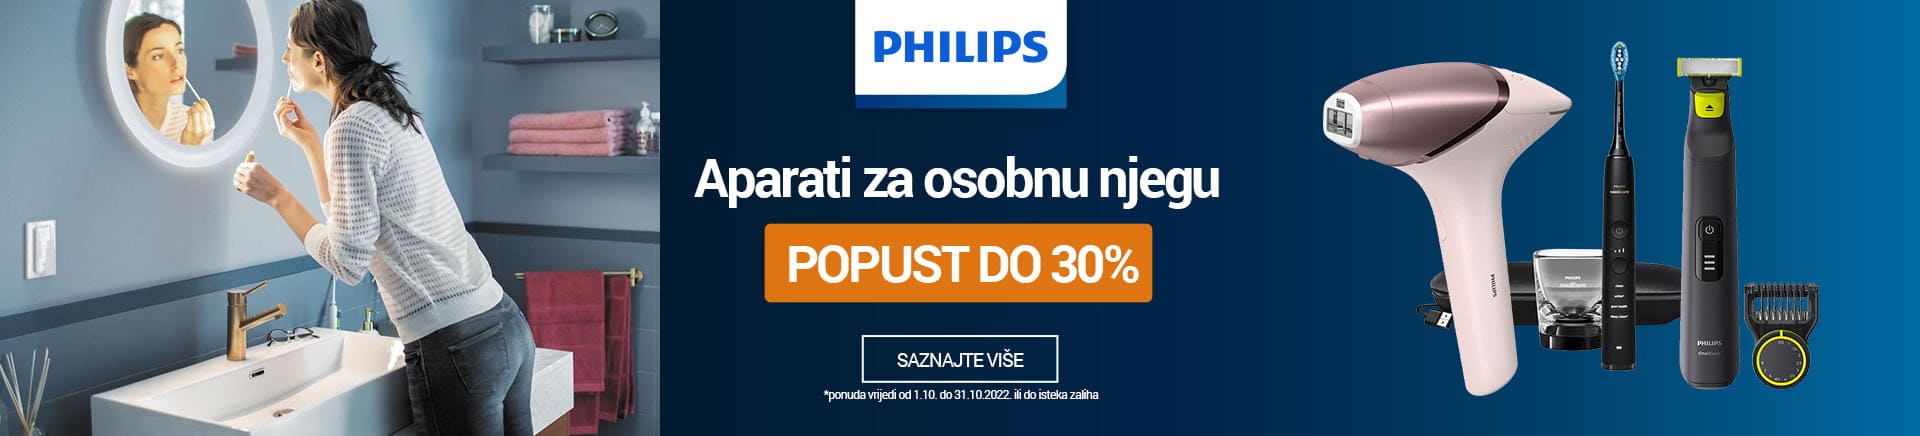 Philips - Aparati za osobnu njegu popust do 30%